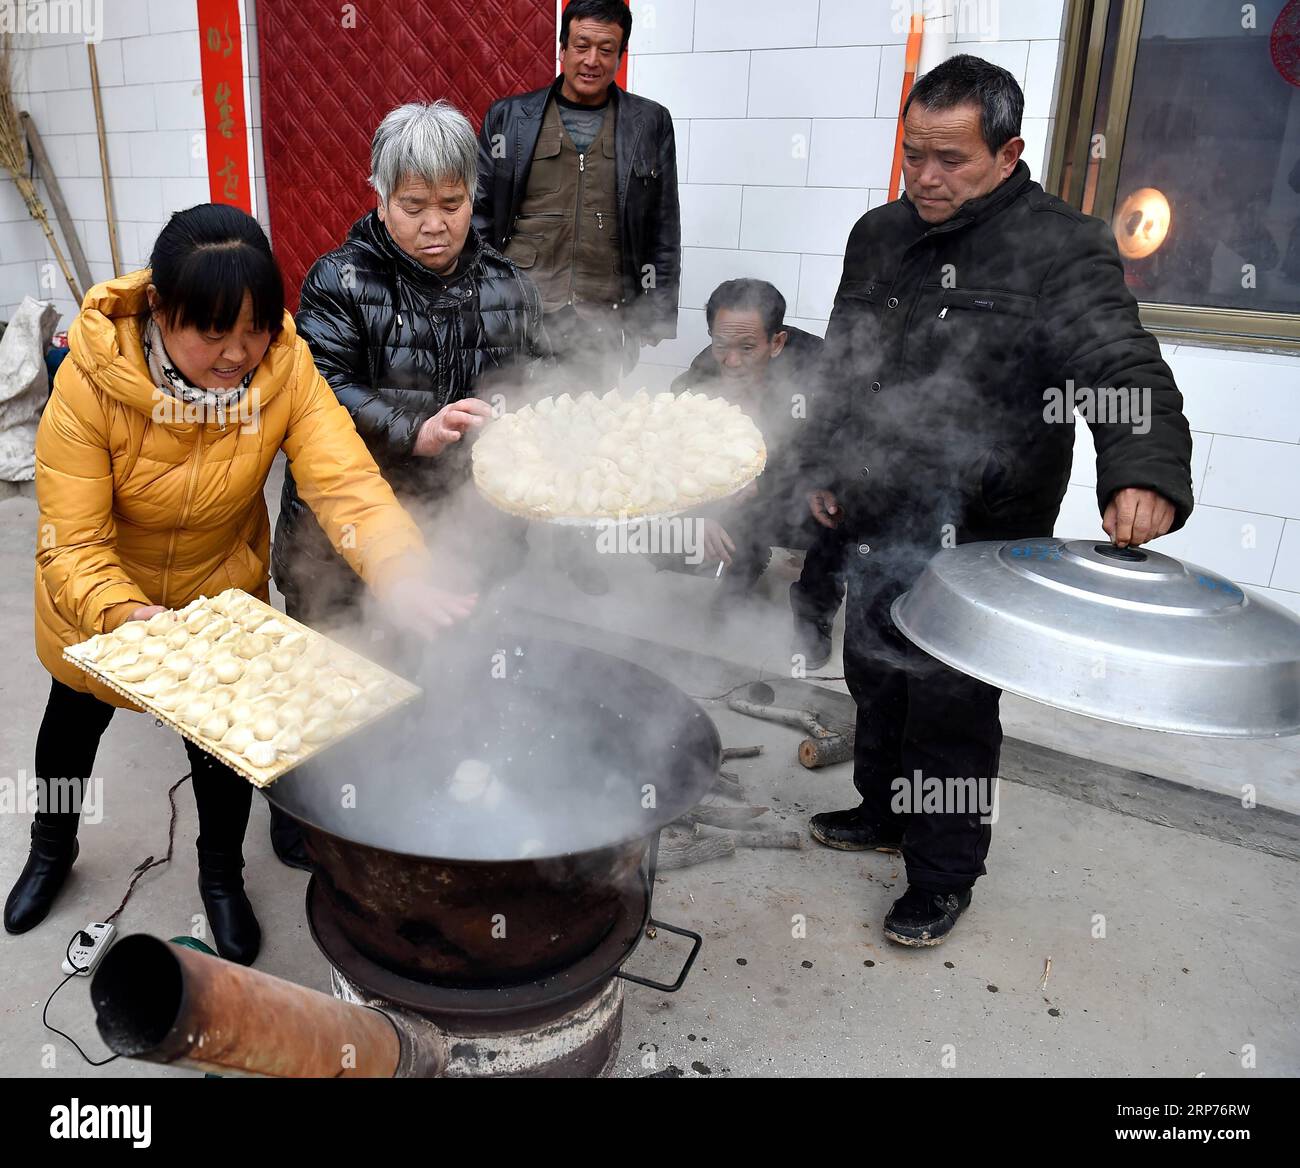 (190129) -- COMTÉ DE WENXI, 29 janv. 2019 (Xinhua) -- les résidents de la colonie de lutte contre la pauvreté Home of Happiness cuisinent des boulettes dans le village de Zhangcailing, dans le canton de Yangyu, comté de Wenxi, province du Shanxi du nord de la Chine, 28 janvier 2019. Pendant des générations, les habitants du village de Zhangcailing ont à peine arraché leur vie en raison de leur isolement géographique, de la médiocrité des infrastructures et du manque d’industries de soutien. Pour aider les villageois à sortir de la pauvreté, le gouvernement a augmenté son soutien financier en encourageant l'agriculture et l'élevage adaptés aux conditions locales. En plantant du poivre de Sichuan, une épice, un Banque D'Images